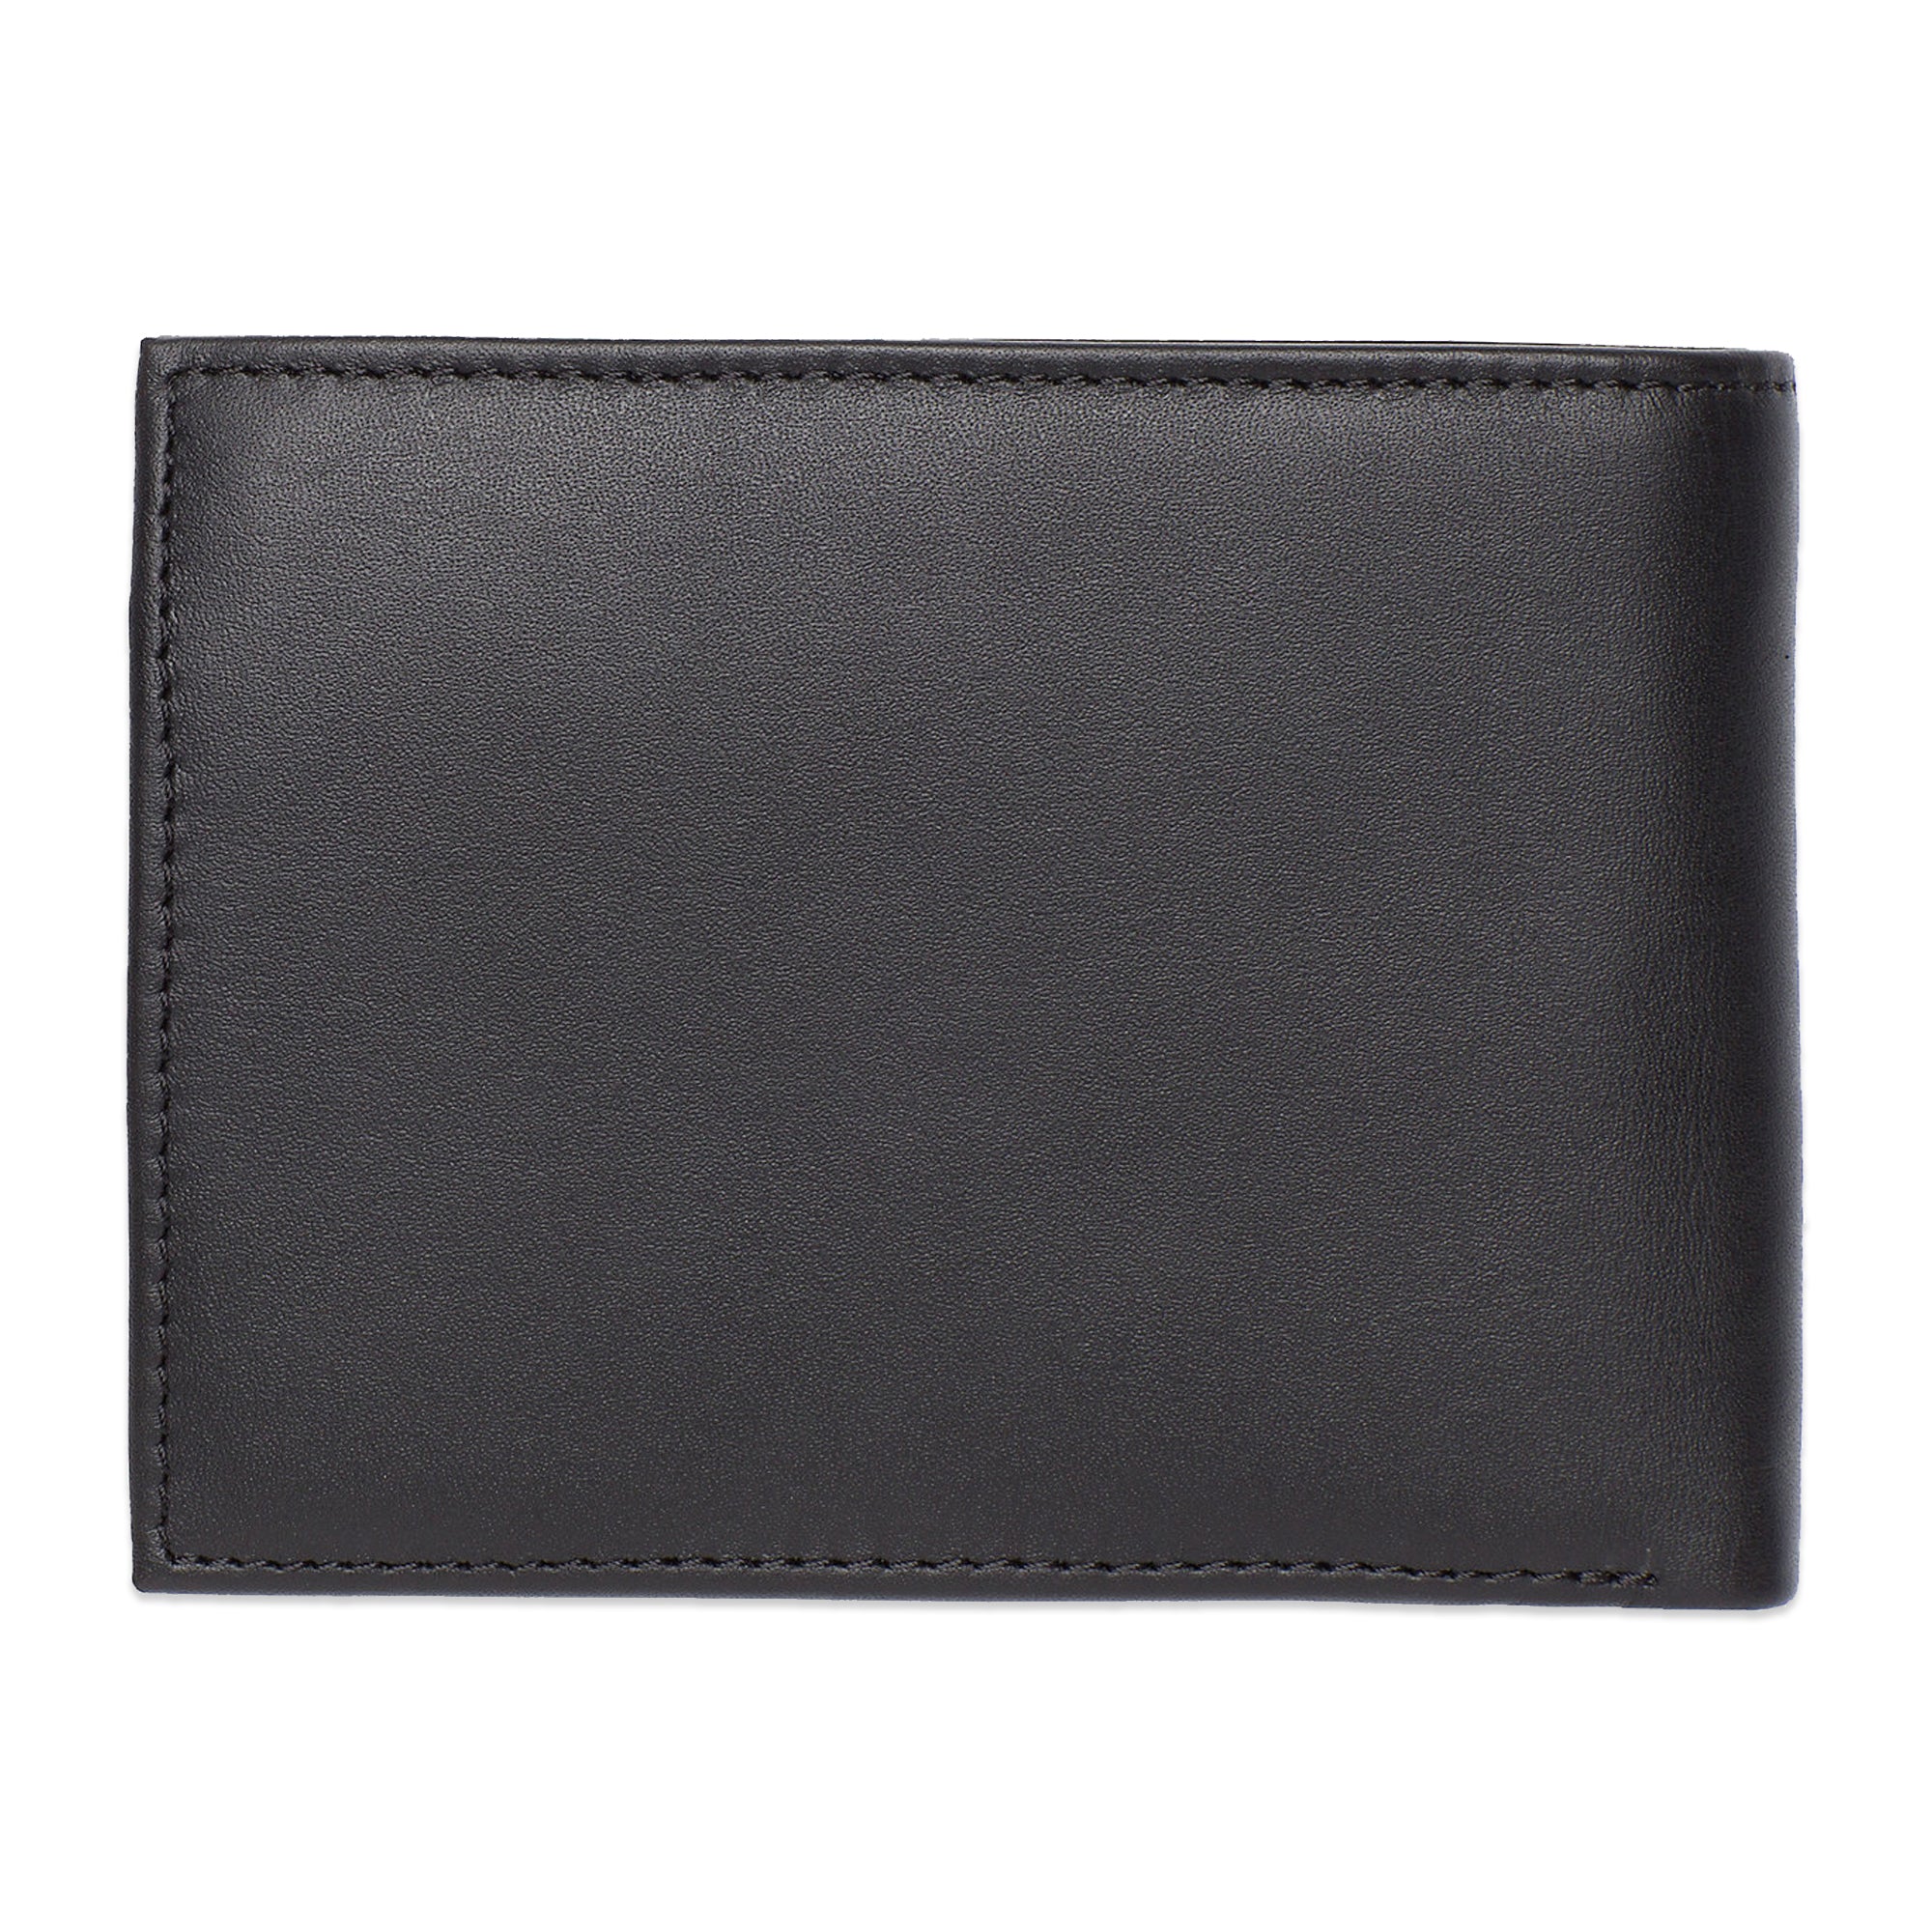 Tommy Hilfiger Eton Card and Coin Pocket Wallet - Black